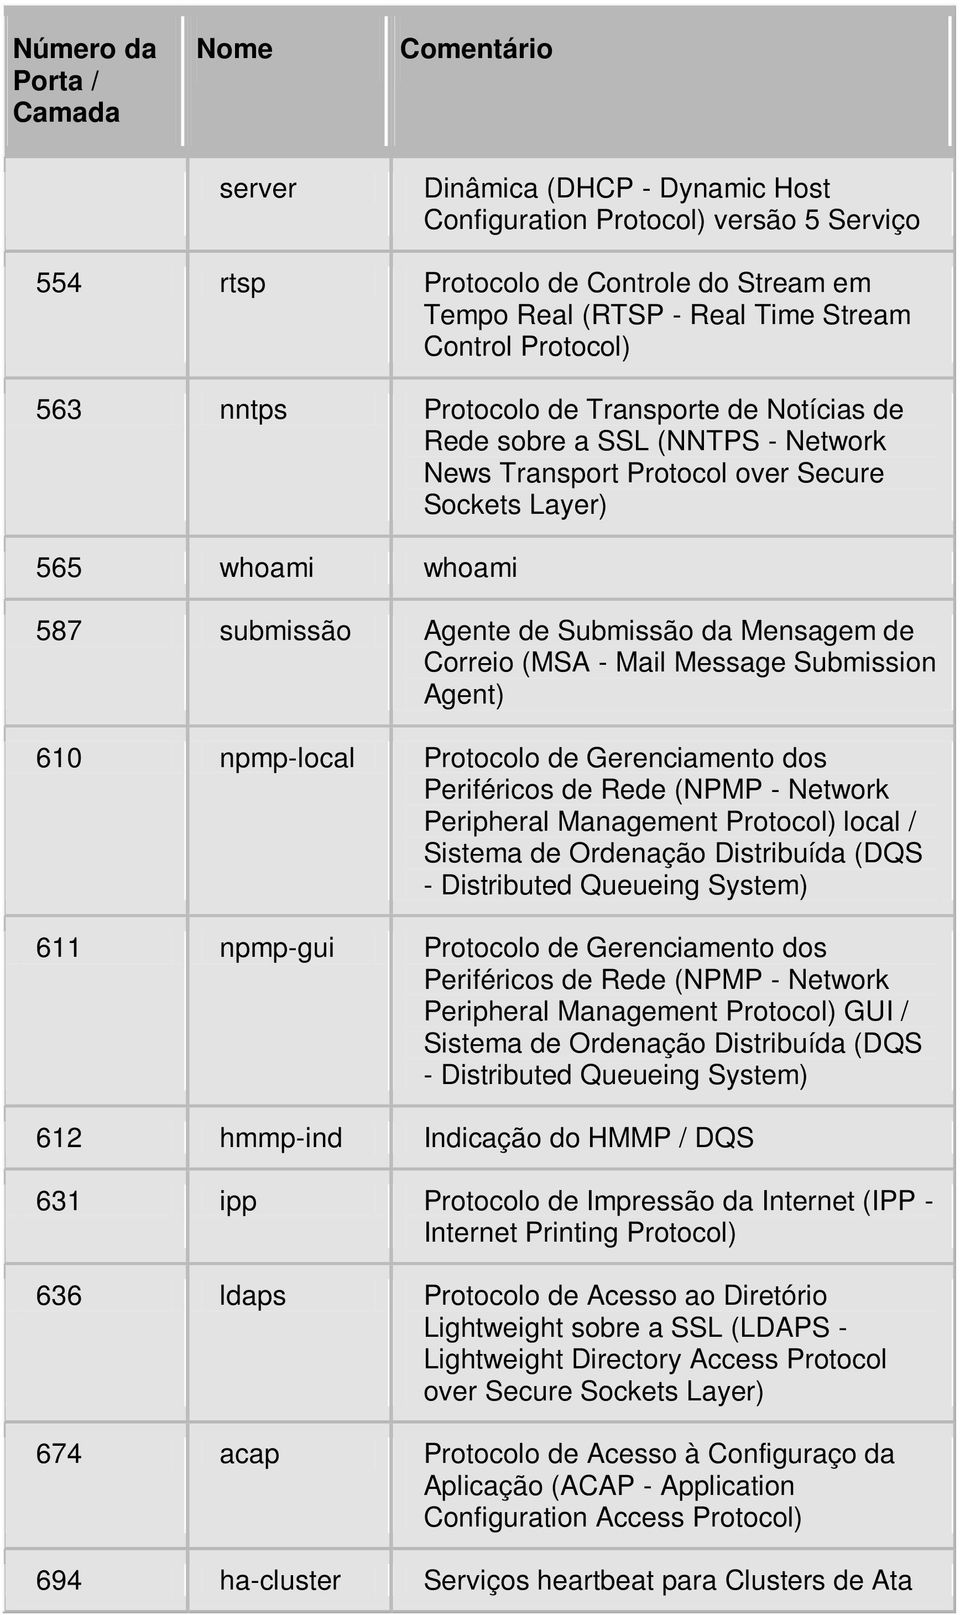 Message Submission Agent) 610 npmp-local Protocolo de Gerenciamento dos Periféricos de Rede (NPMP - Network Peripheral Management Protocol) local / Sistema de Ordenação Distribuída (DQS - Distributed